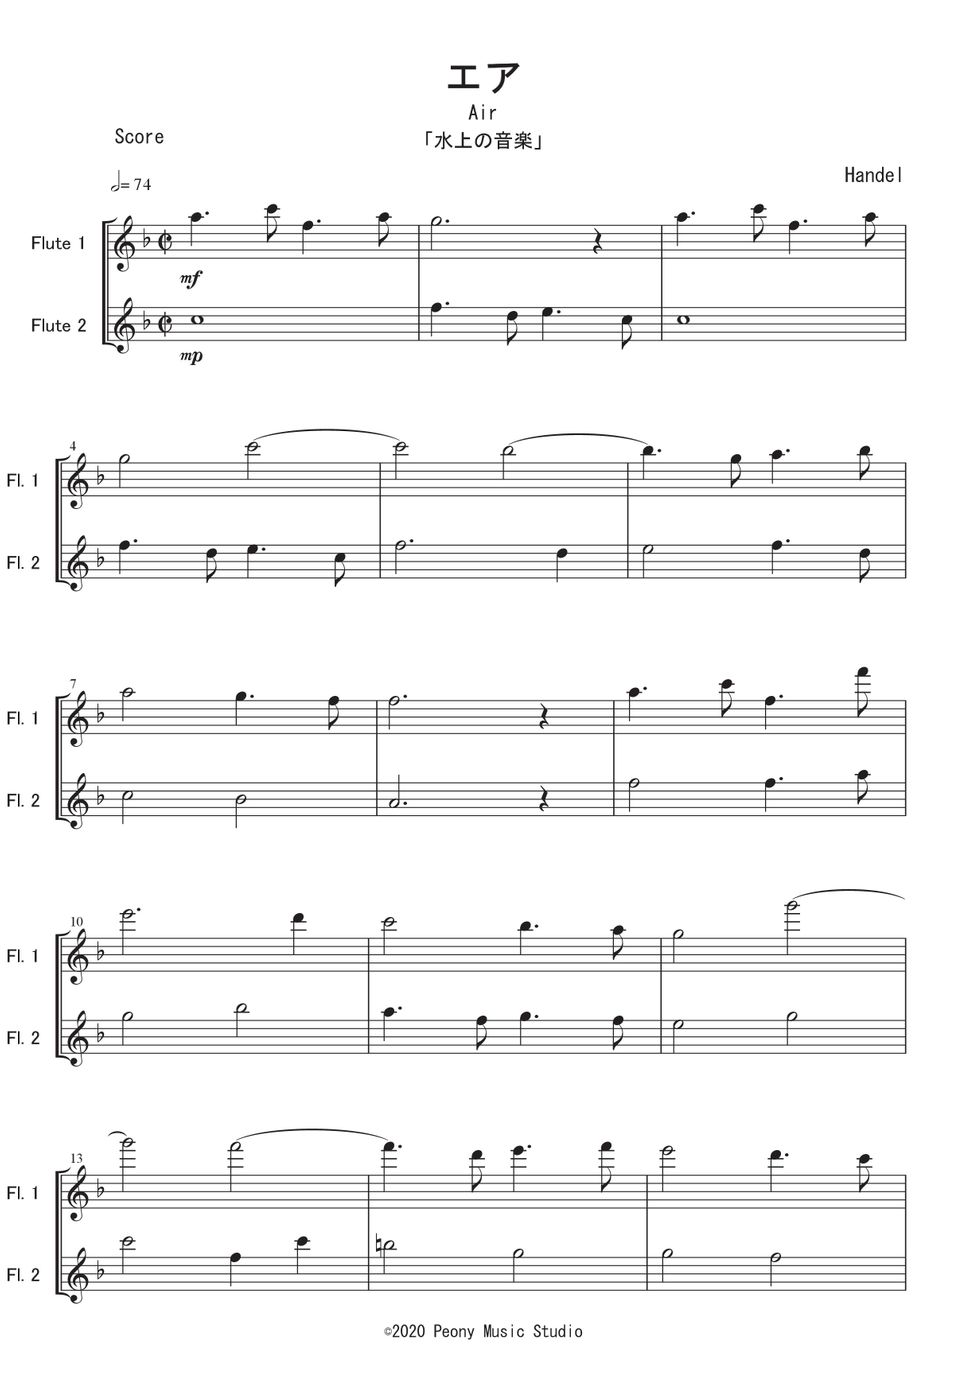 ヘンデル - 「水上の音楽」より エア (Fl二重奏) by Peony